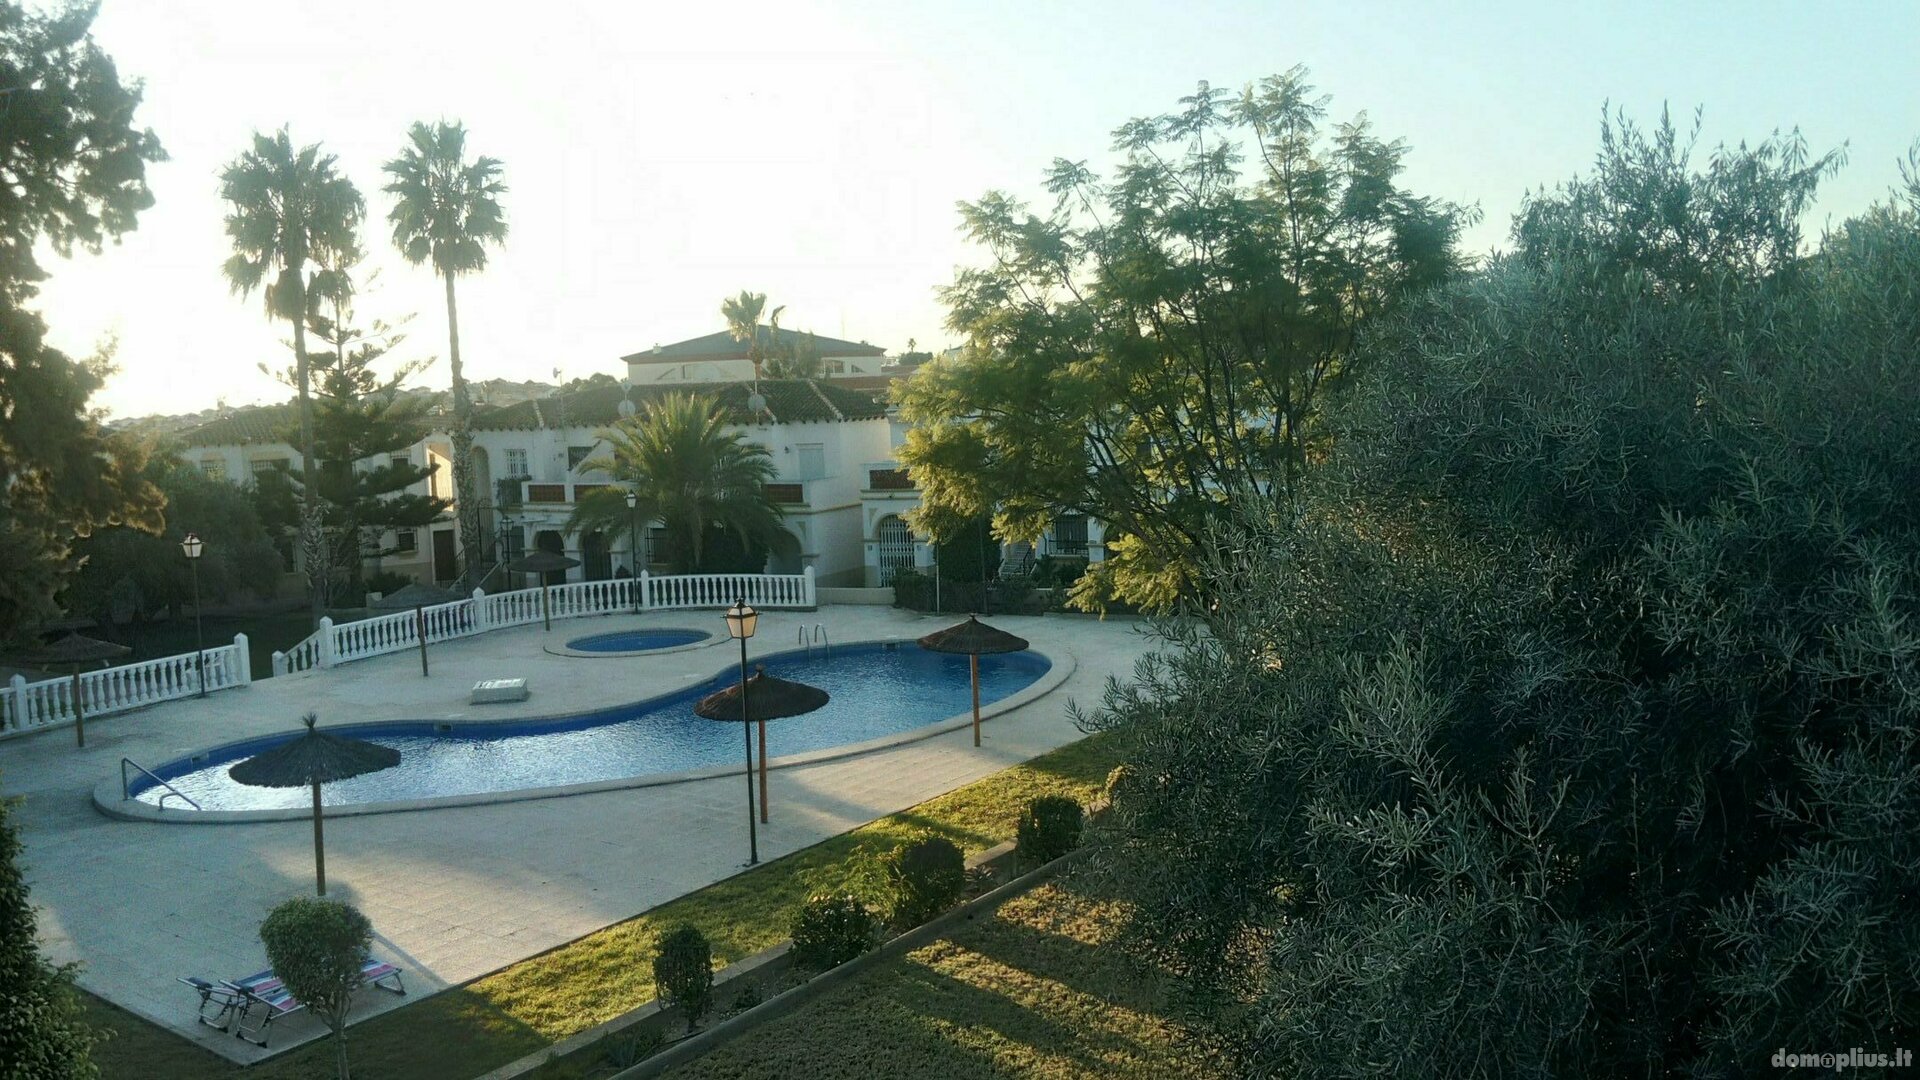 2 kambarių buto nuoma Ispanijoje, San MIguel de Salinas